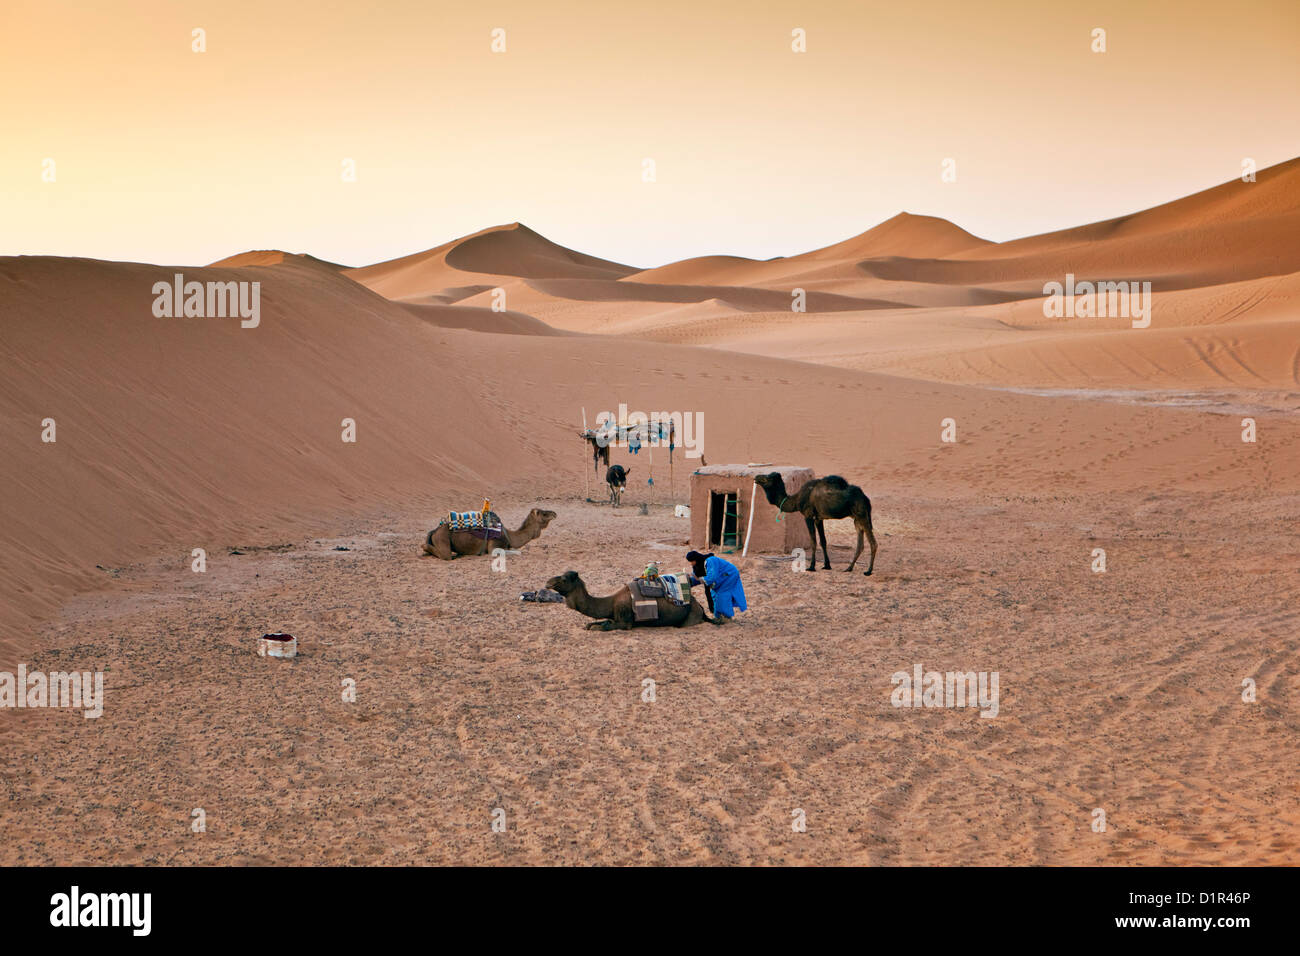 Marruecos, M'Hamid, Erg Chigaga dunas de arena. El desierto del Sahara. Vivac de camello-conductor. Foto de stock